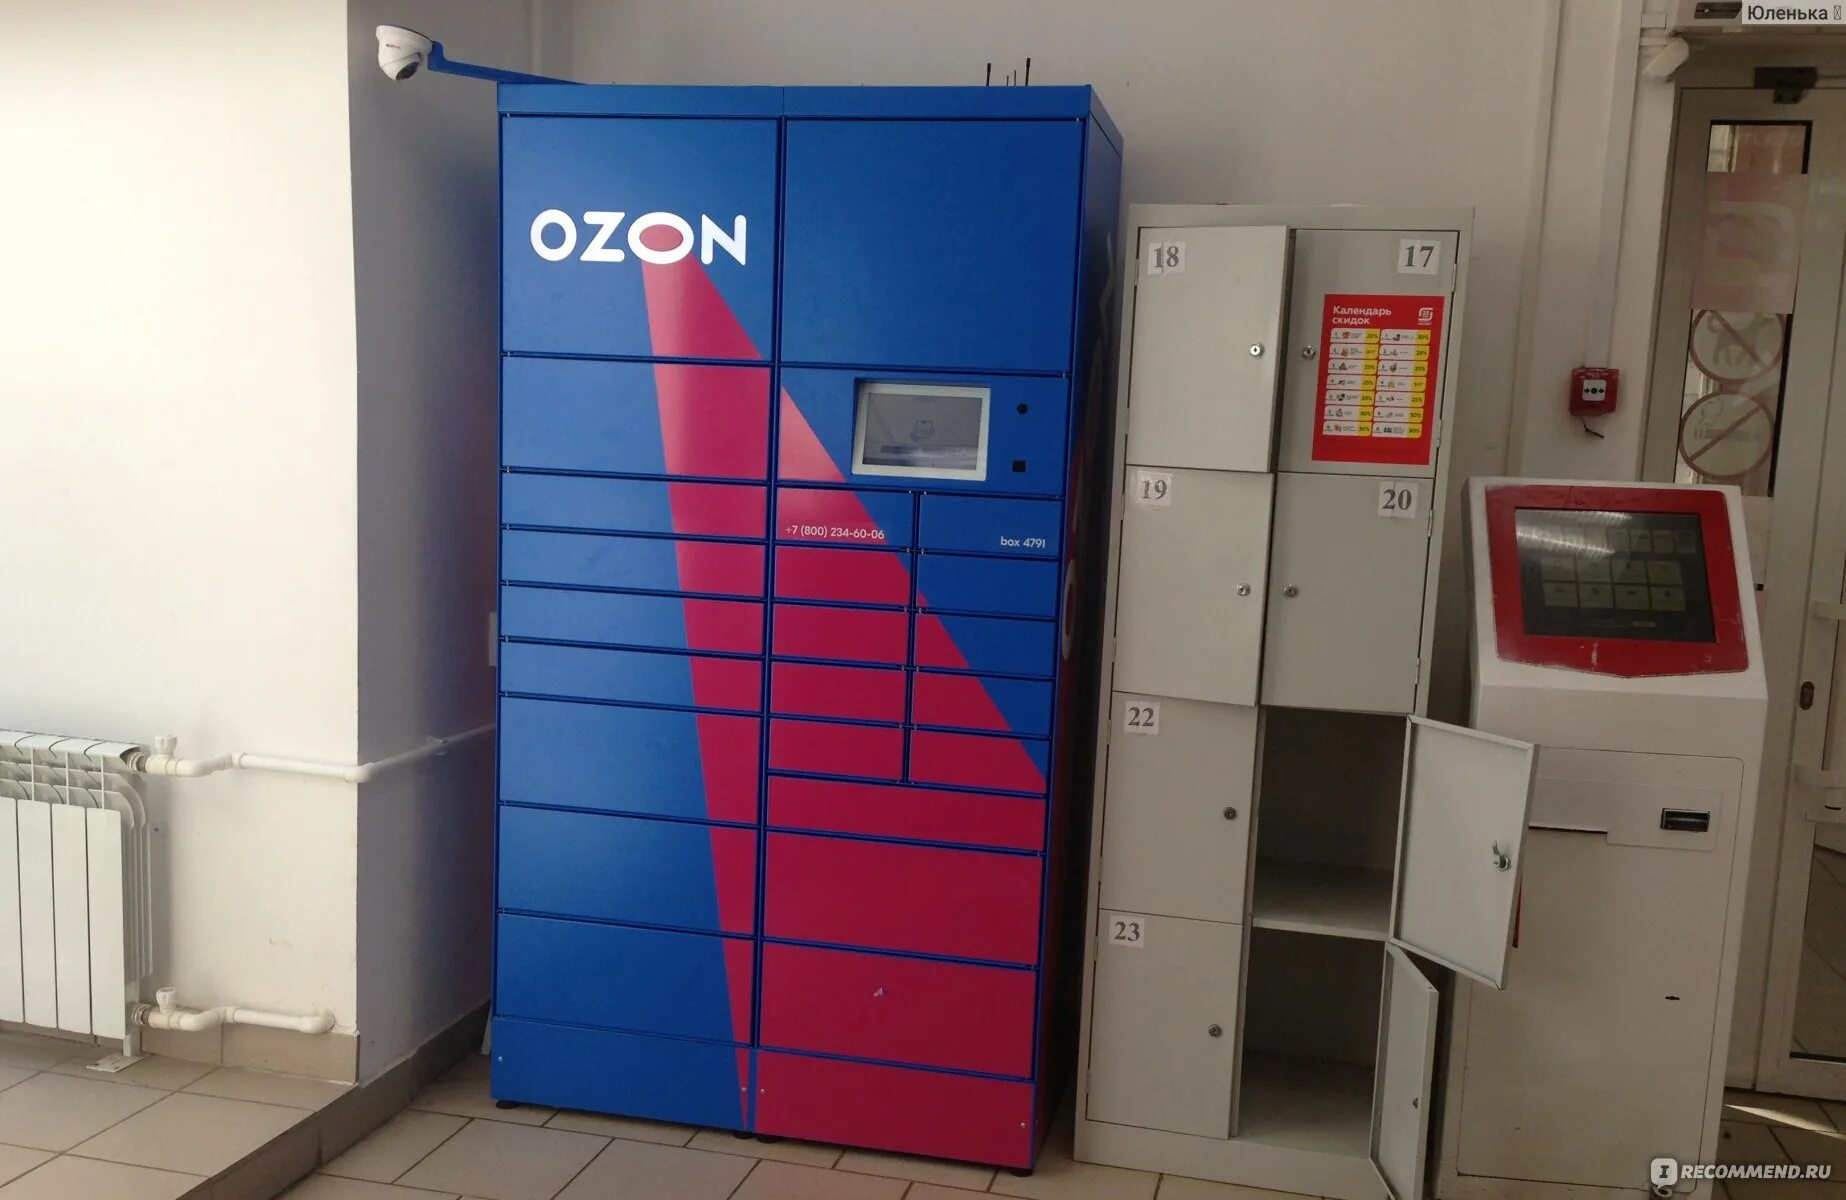 Постамат OZON box8810. Постамат OZON Box 5602. Постамат OZON Box 1874. Постамат OZON Box 5140.